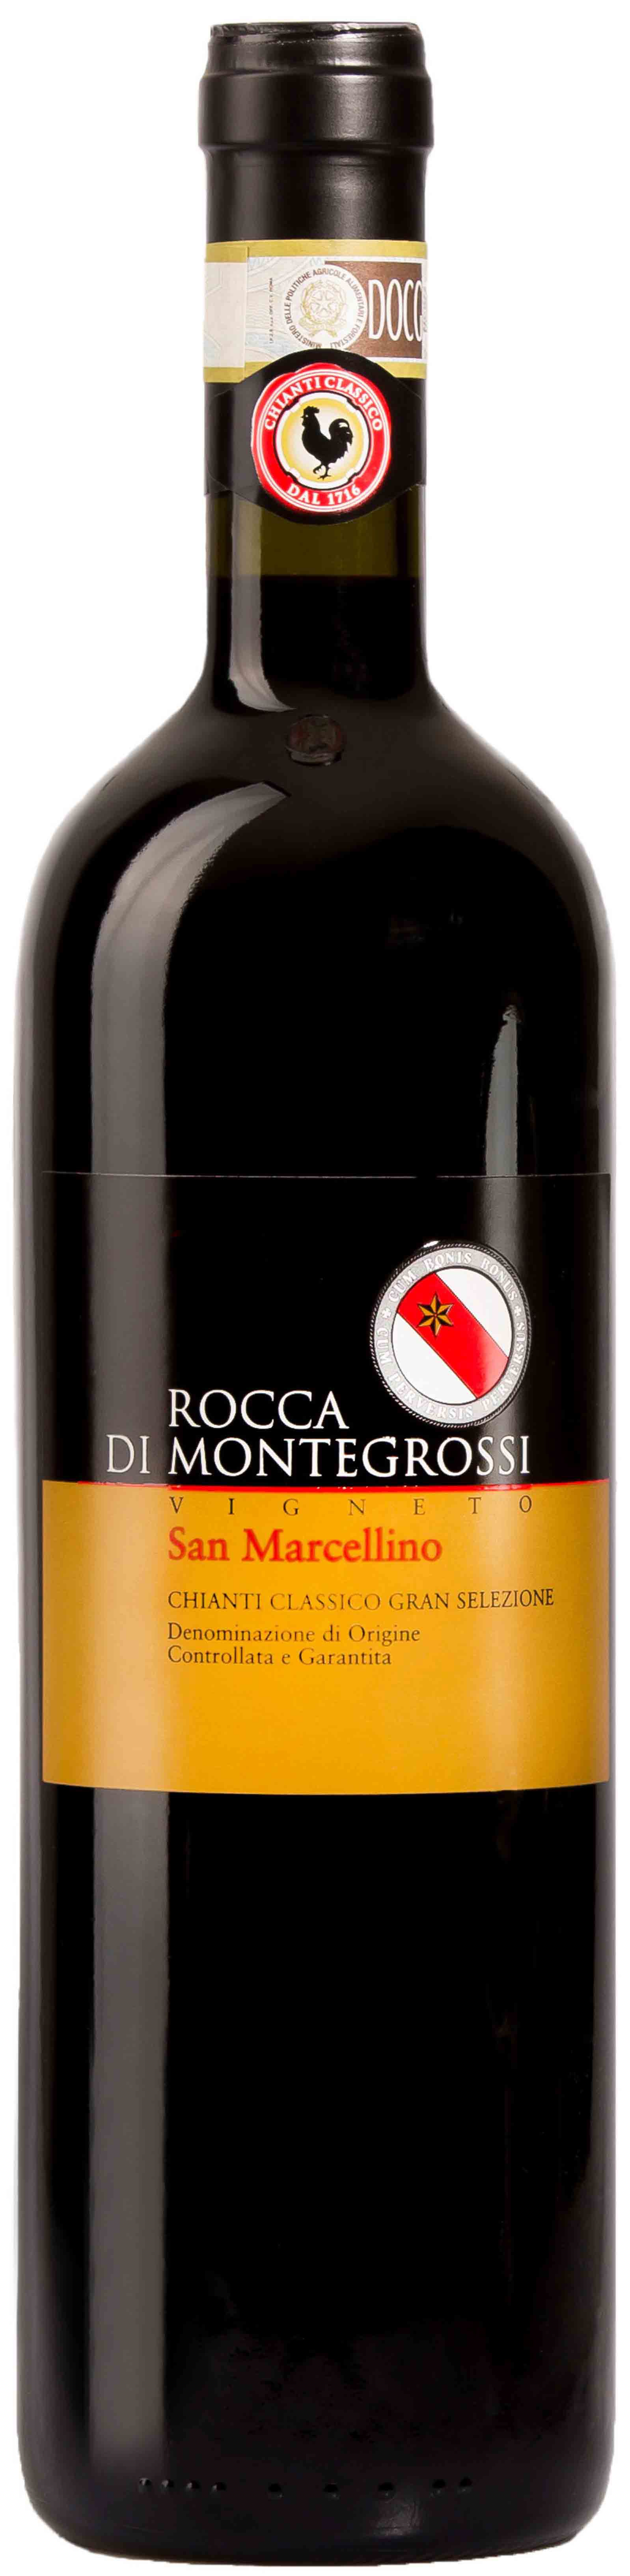 Rocca Di Montegrossi, Vigneto San Marcellino Chianti Classico Gran Selezione, 2013